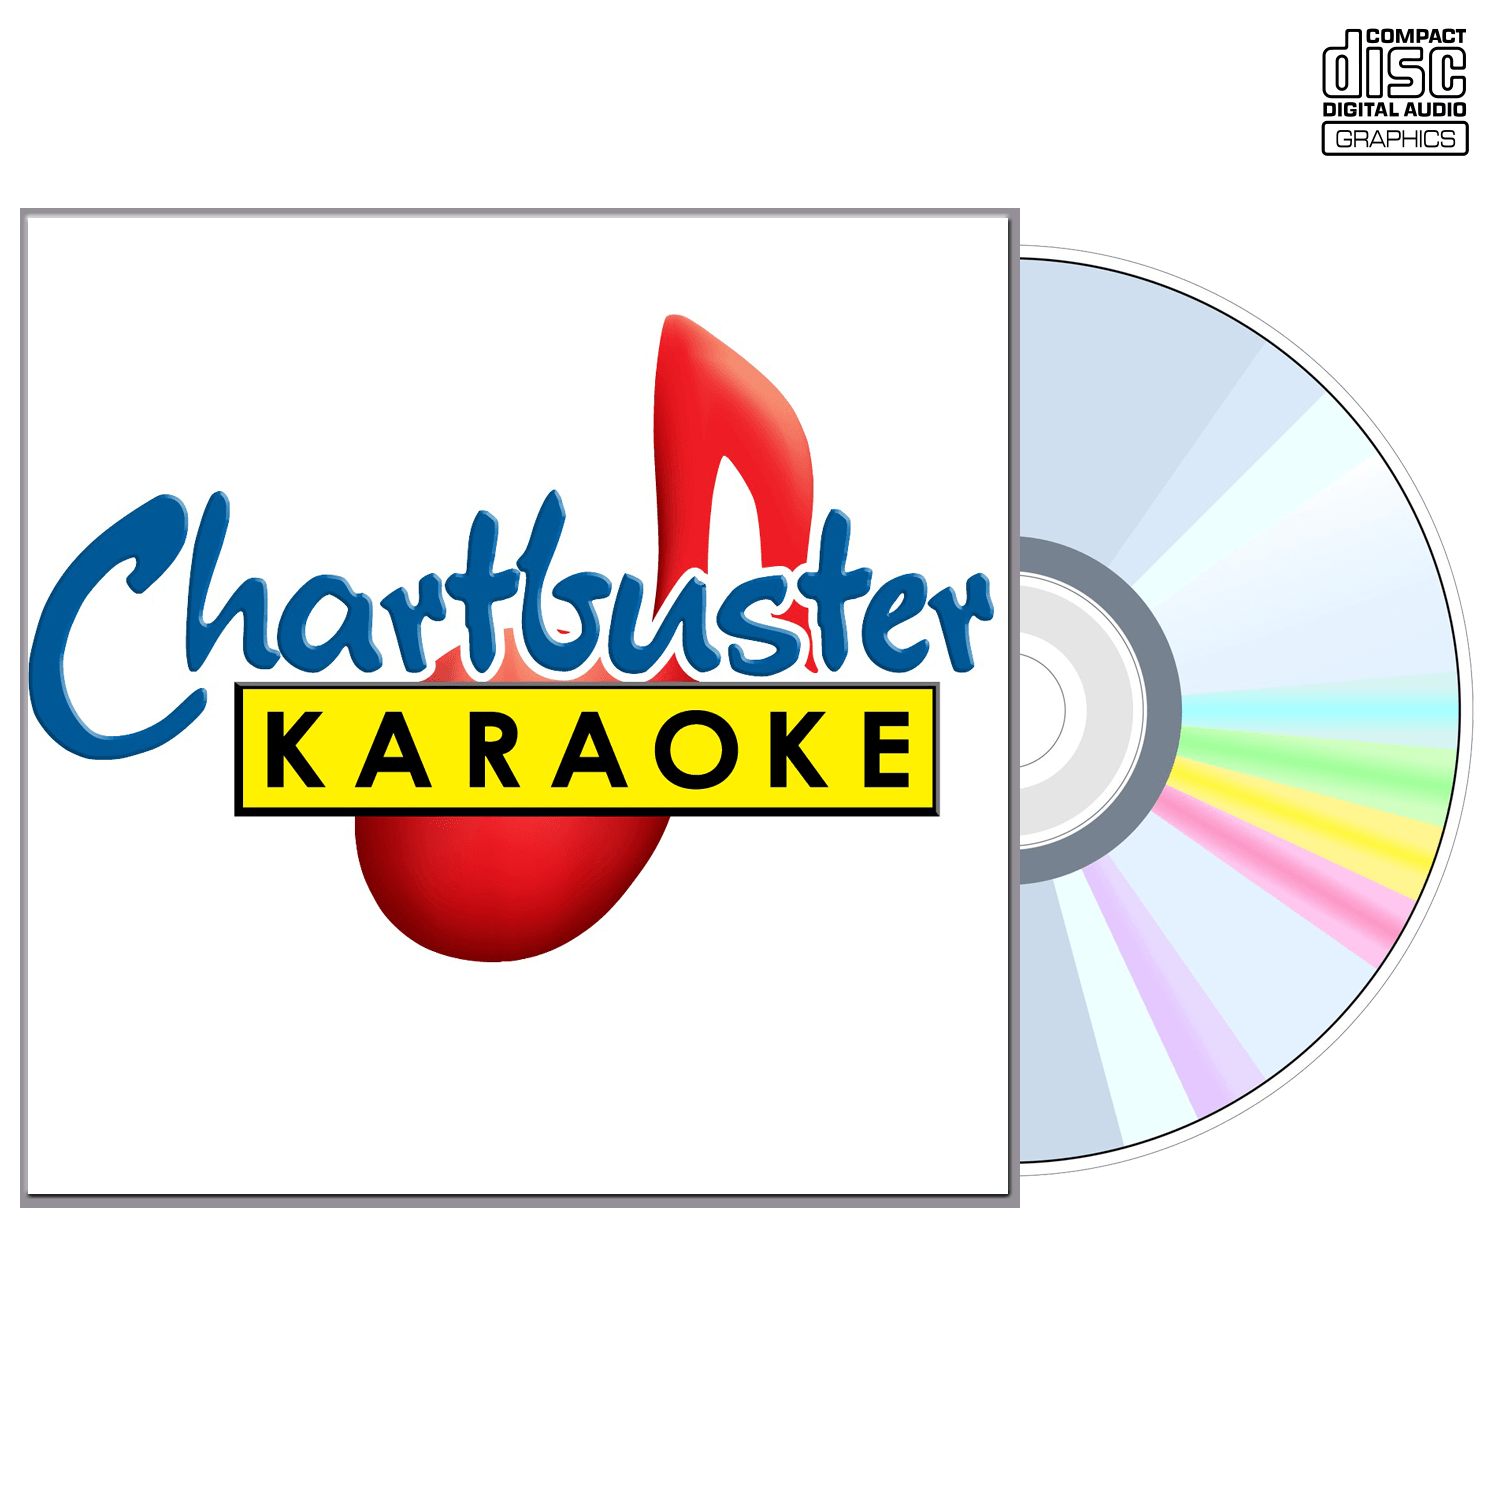 98 Degrees - CD+G - Chartbuster Karaoke - Karaoke Home Entertainment